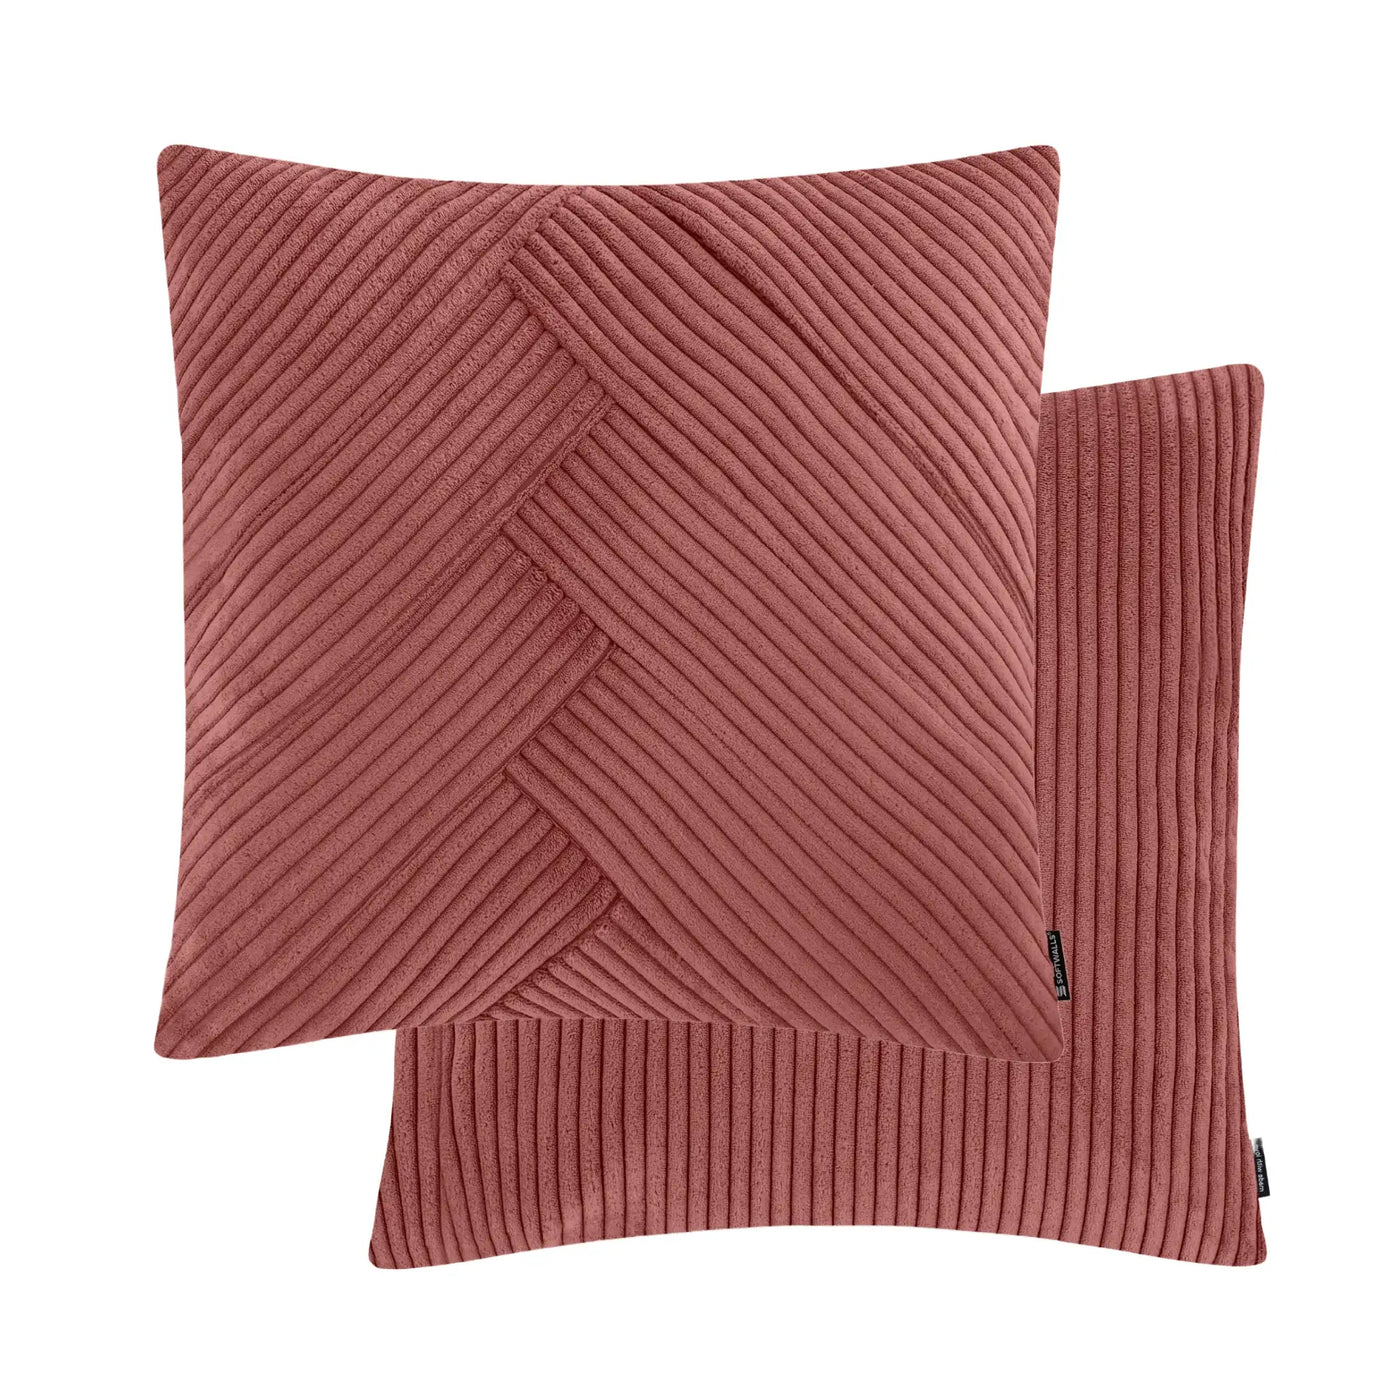 Kissenhülle Wendekissen Cord in der Größe 50 x 50 cm und der Farbe Rot Rosa.